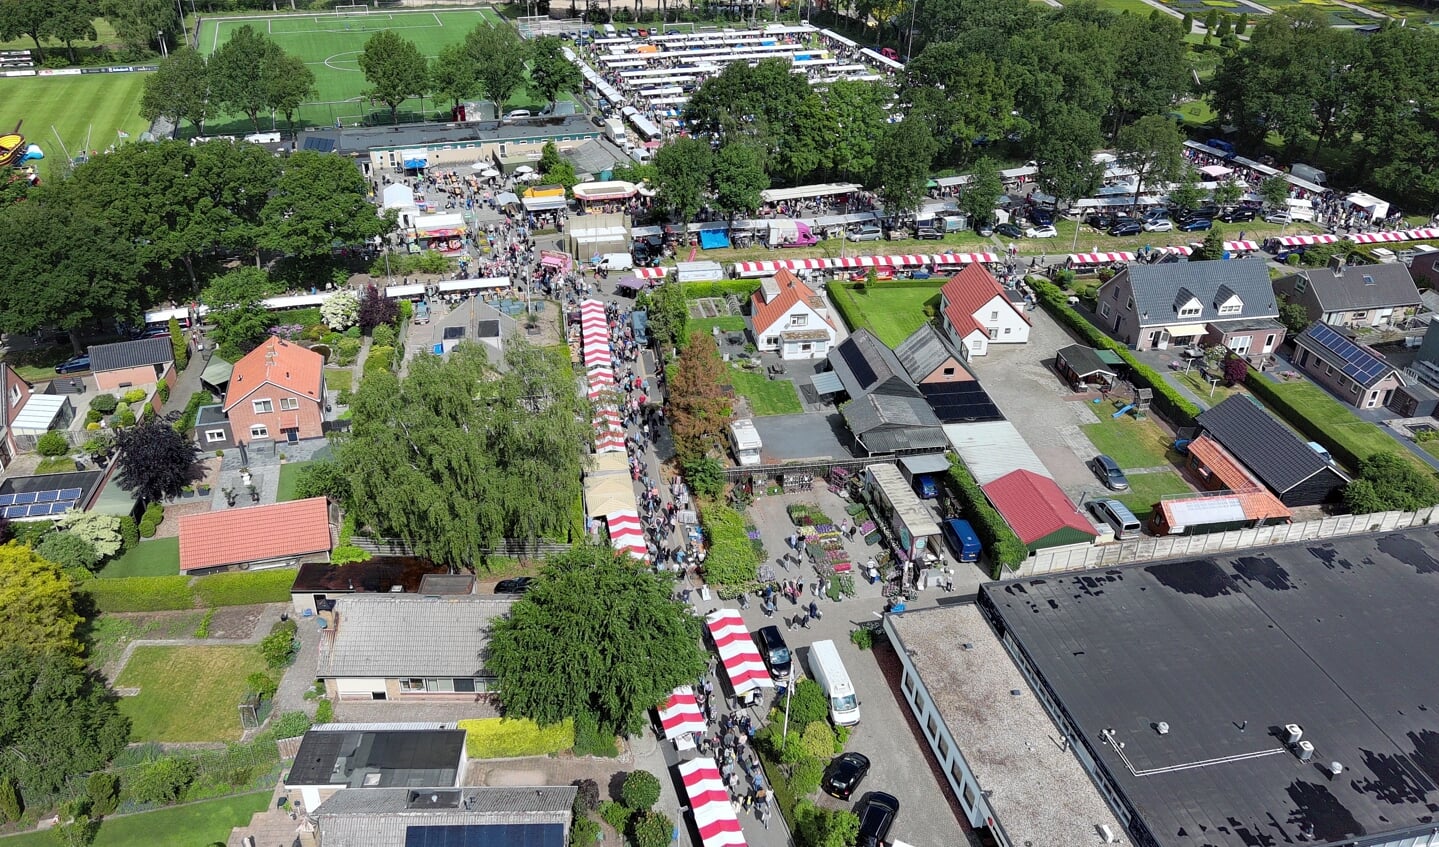 Overzichtsfoto (drone) van de gehouden vlooienmarkt.